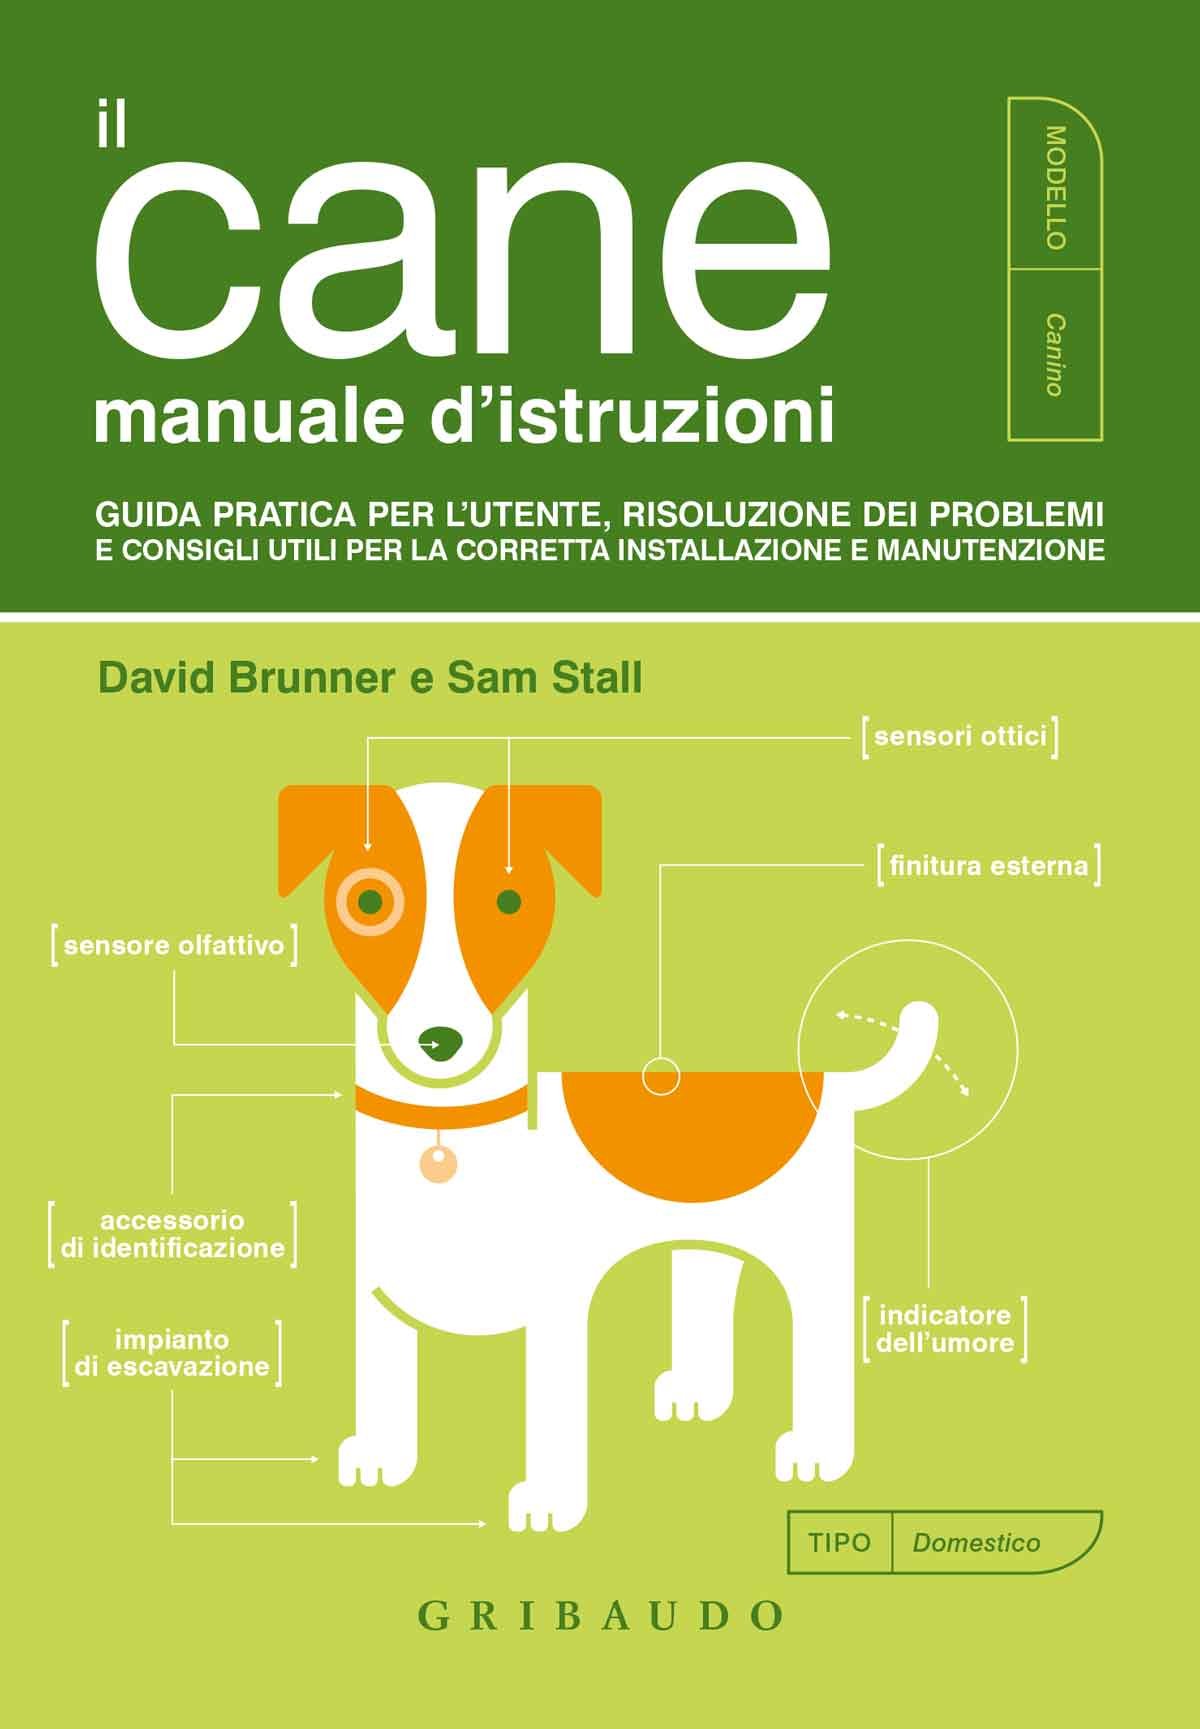 Il cane - Manuale d'istruzioni